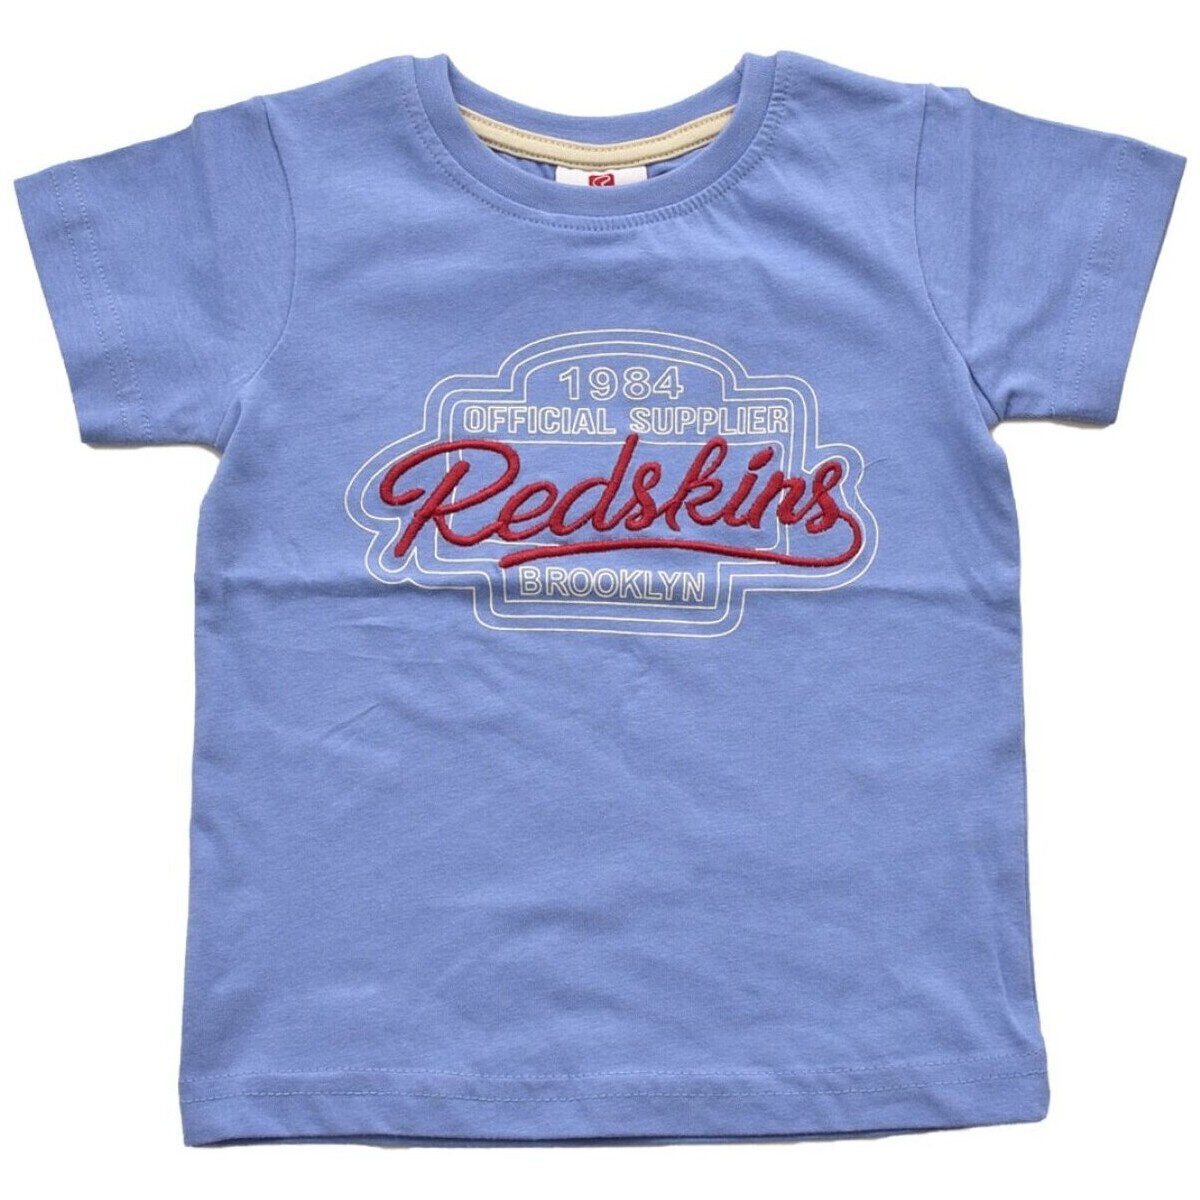 textil Barn T-shirts & Pikétröjor Redskins RS2284 Blå